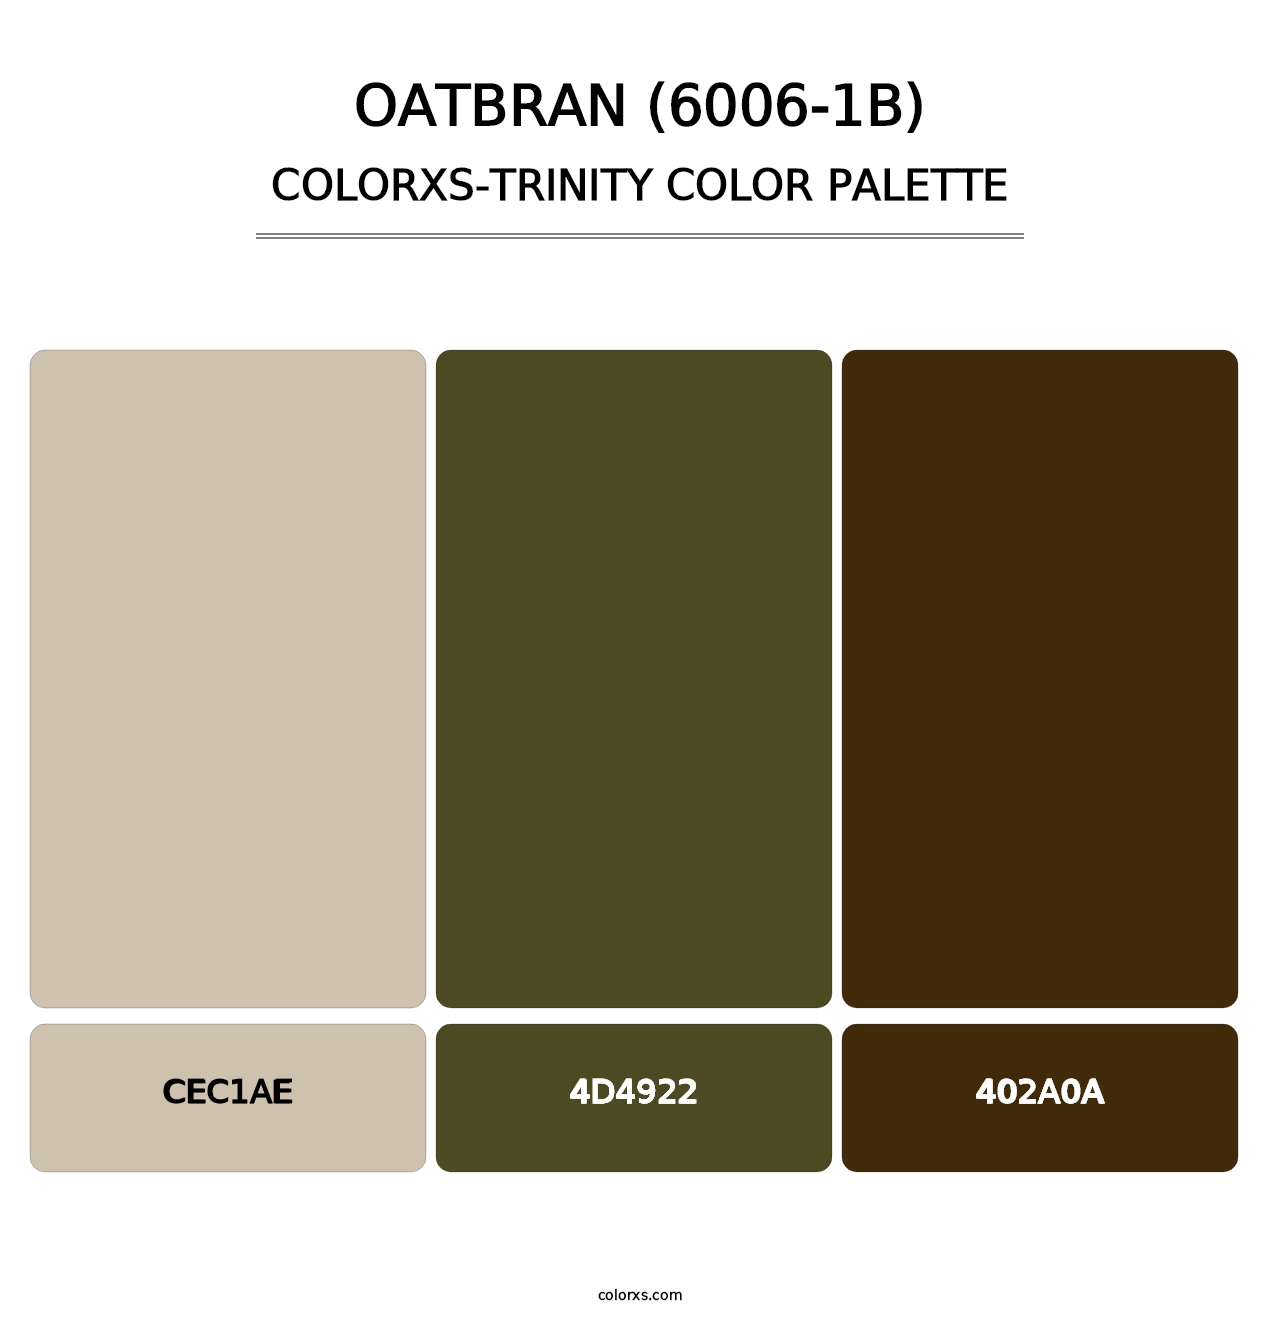 Oatbran (6006-1B) - Colorxs Trinity Palette